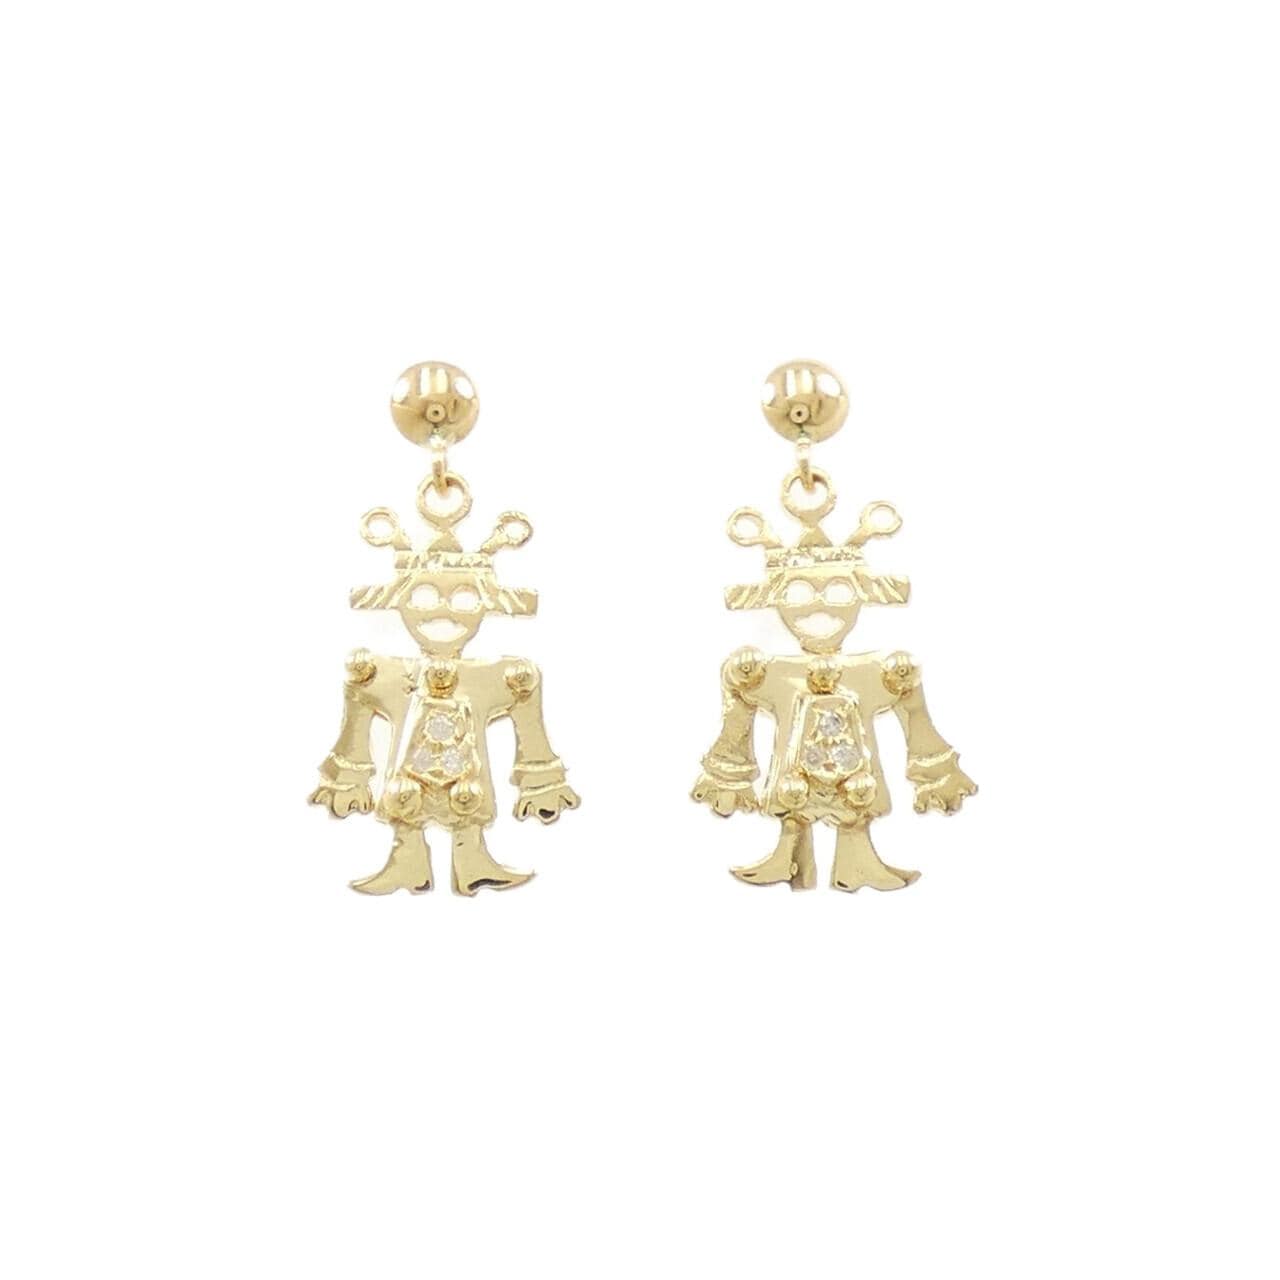 K18YG Diamond earrings 0.02CT